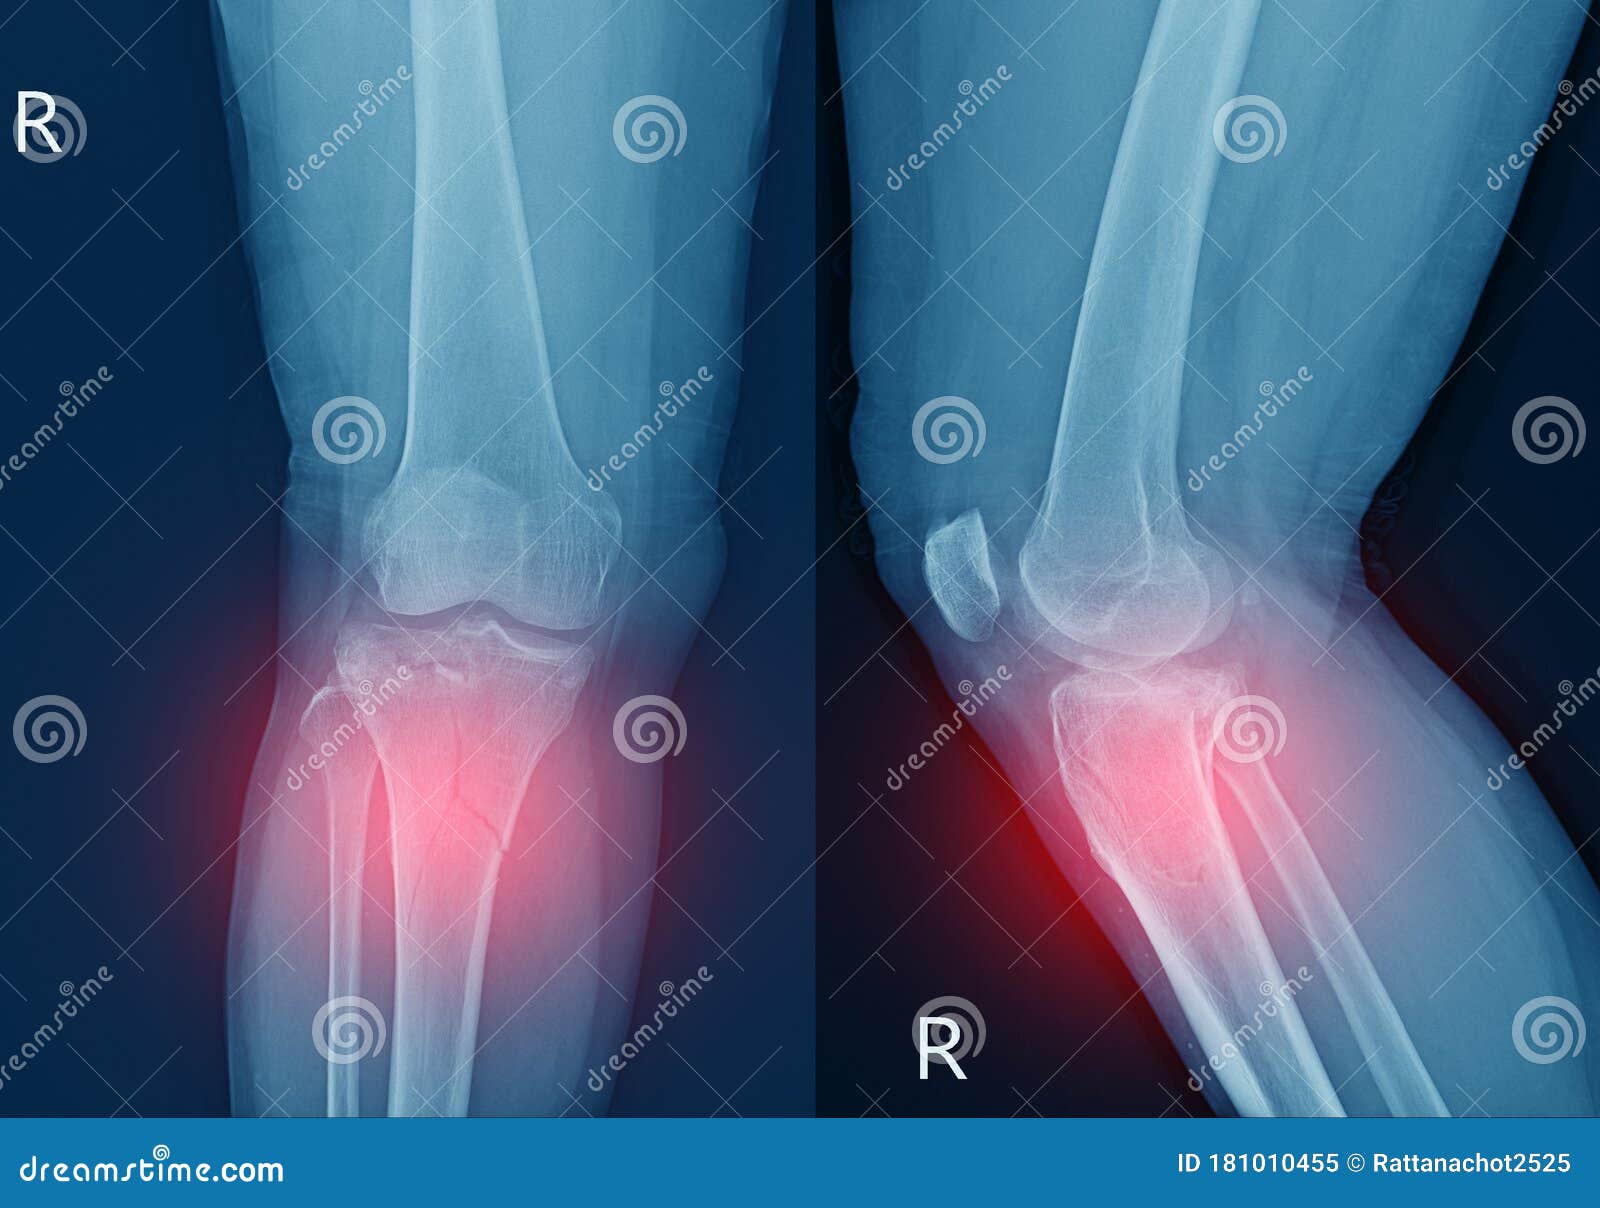 胫骨x线膝骨近端干部骨折胫骨平台侧部凹陷性骨折软组织严重肿胀库存图片 图片包括有联接 韧带